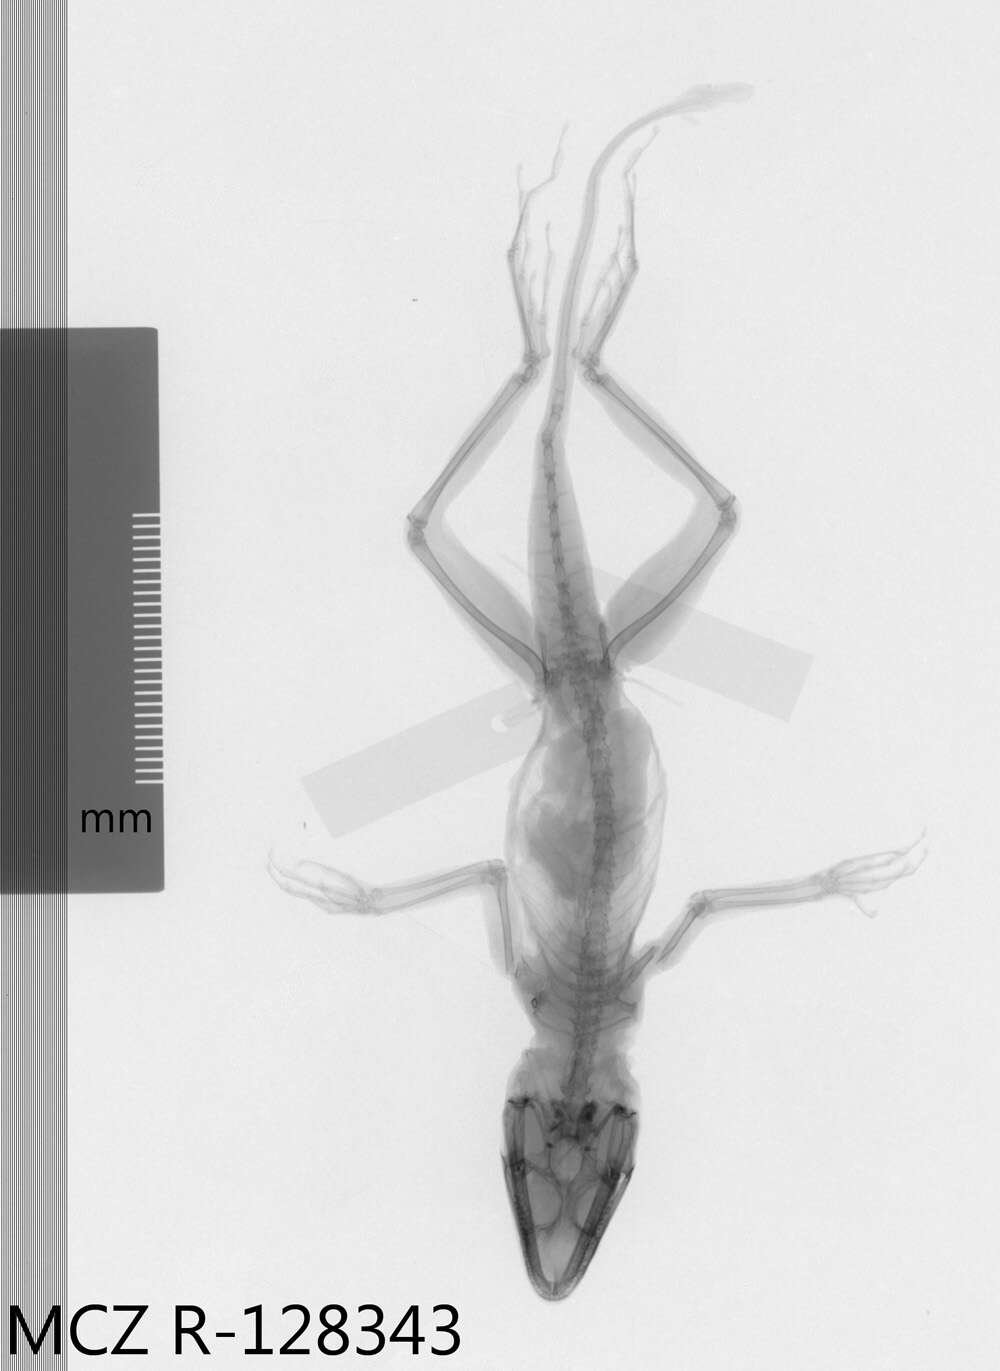 Image of Anolis longitibialis specuum Schwartz 1979